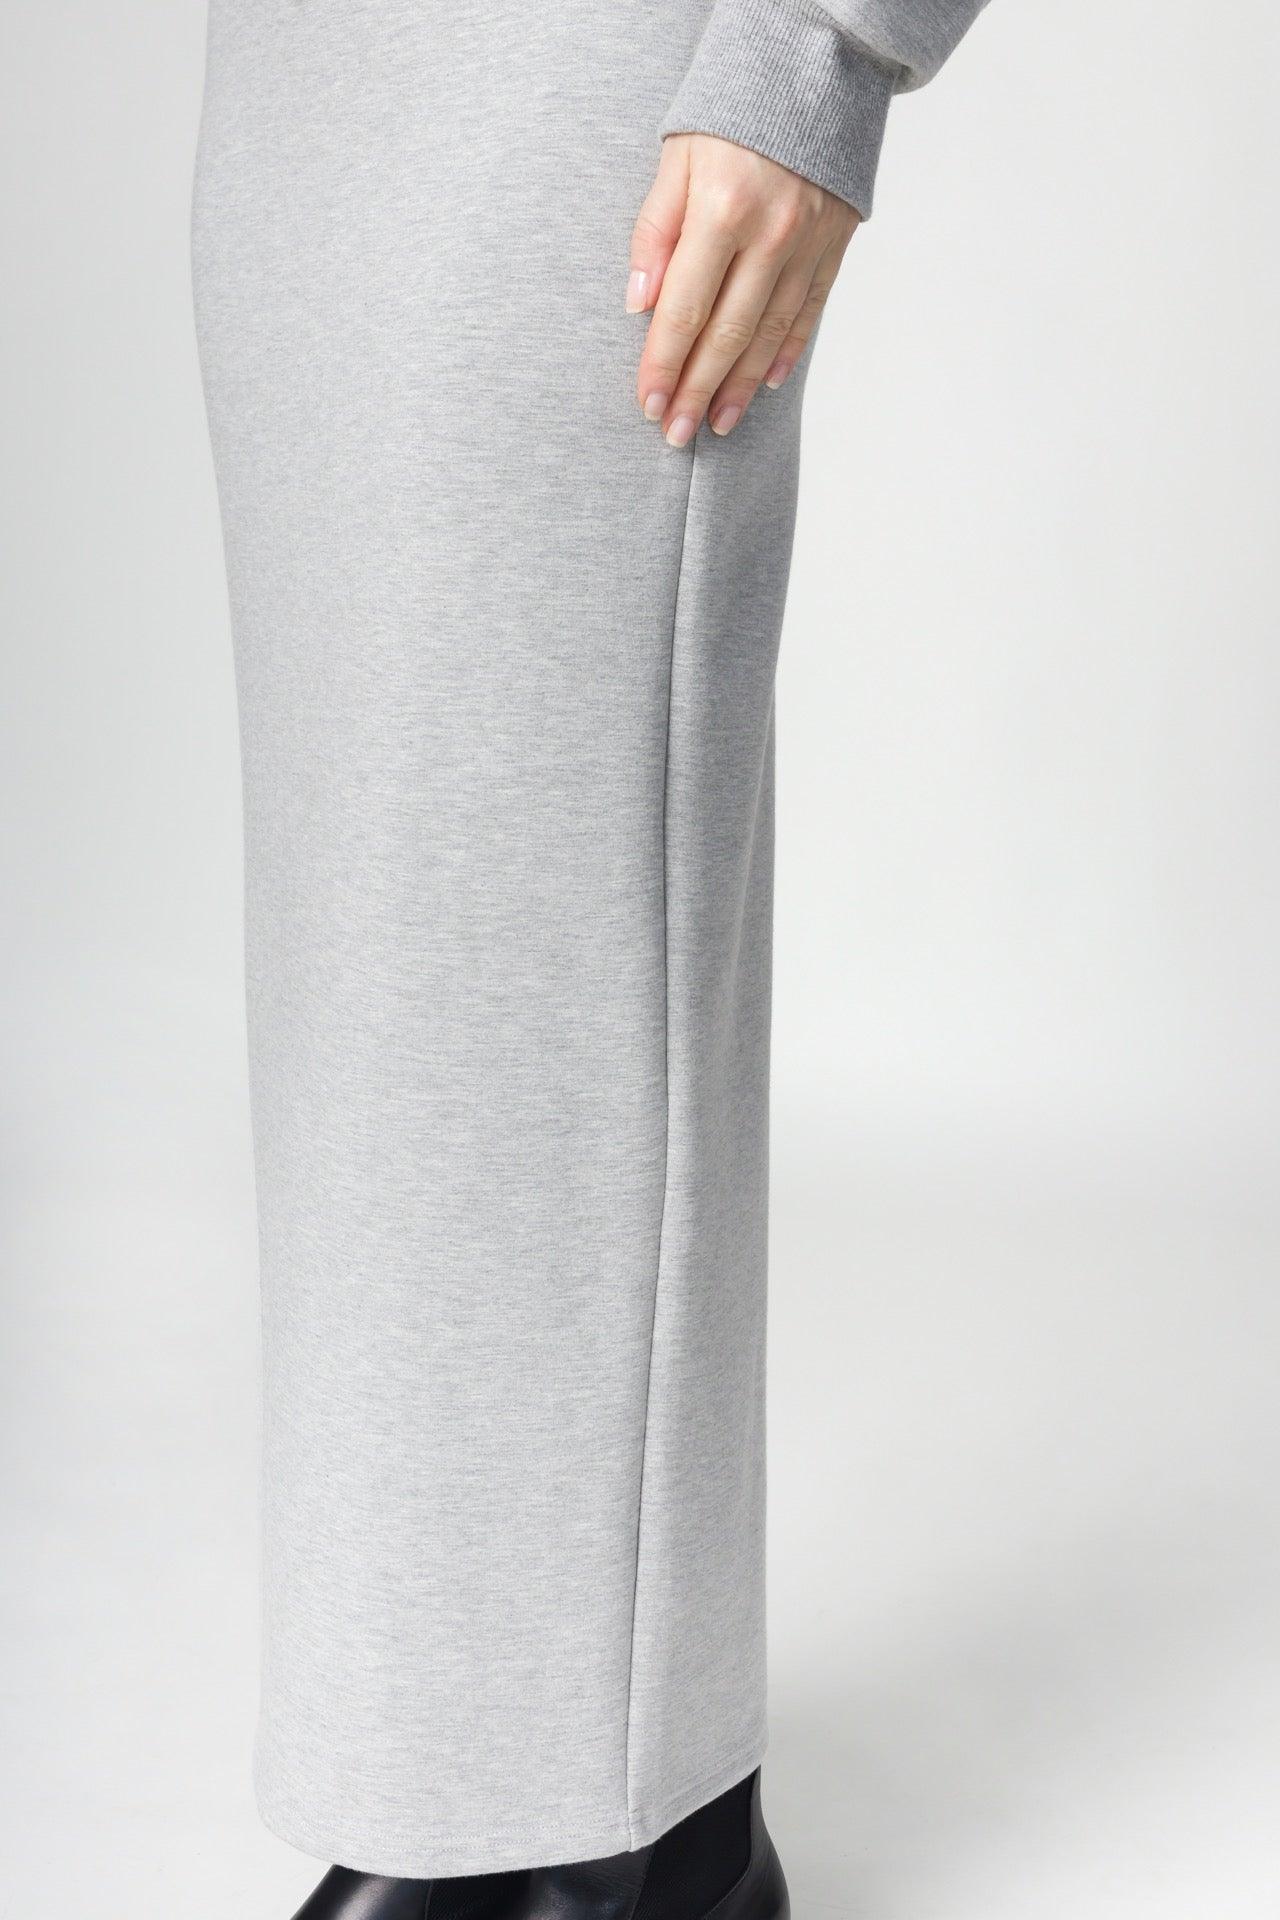 Women&#39;s Bonding Pencil Long Skirt - NOT LABELED